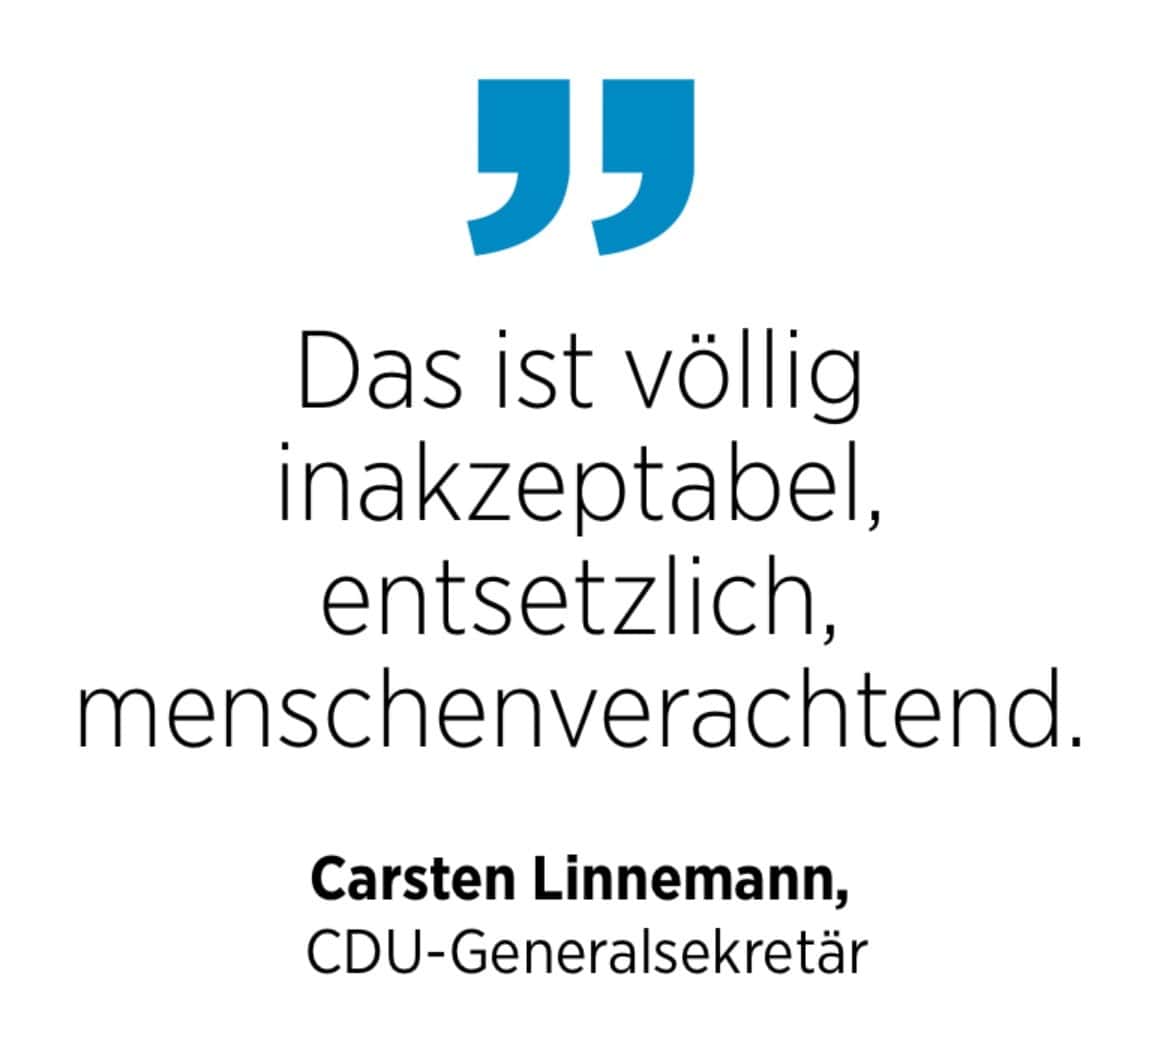 Carsten Linnemann, CDU-Generalsekretär: Das ist völlig inakzeptabel, entsetzlich, menschenverachtend.